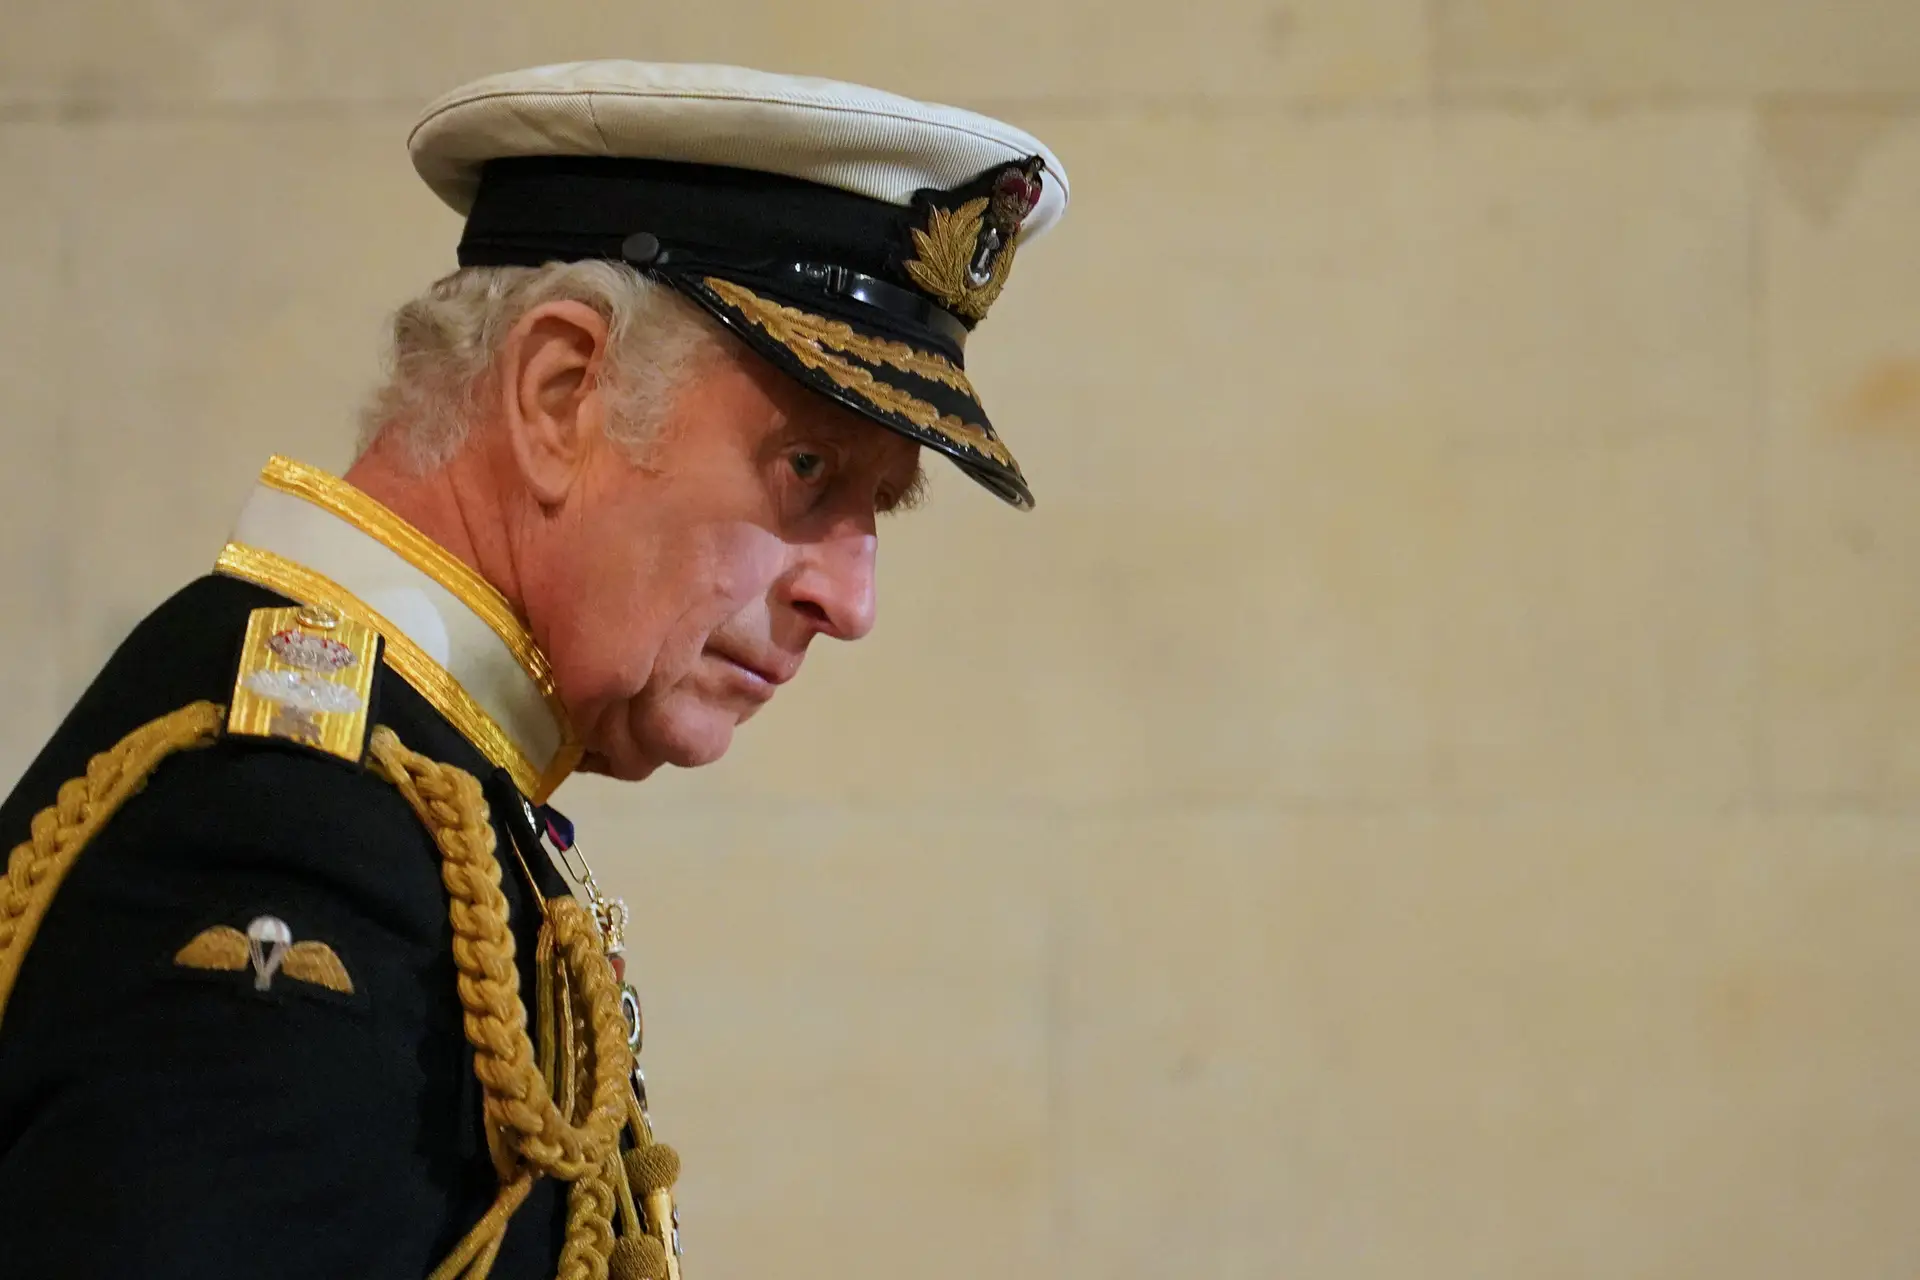 Carlos III compromete-se "a respeitar os que seguem outros caminhos espirituais" no Reino Unido